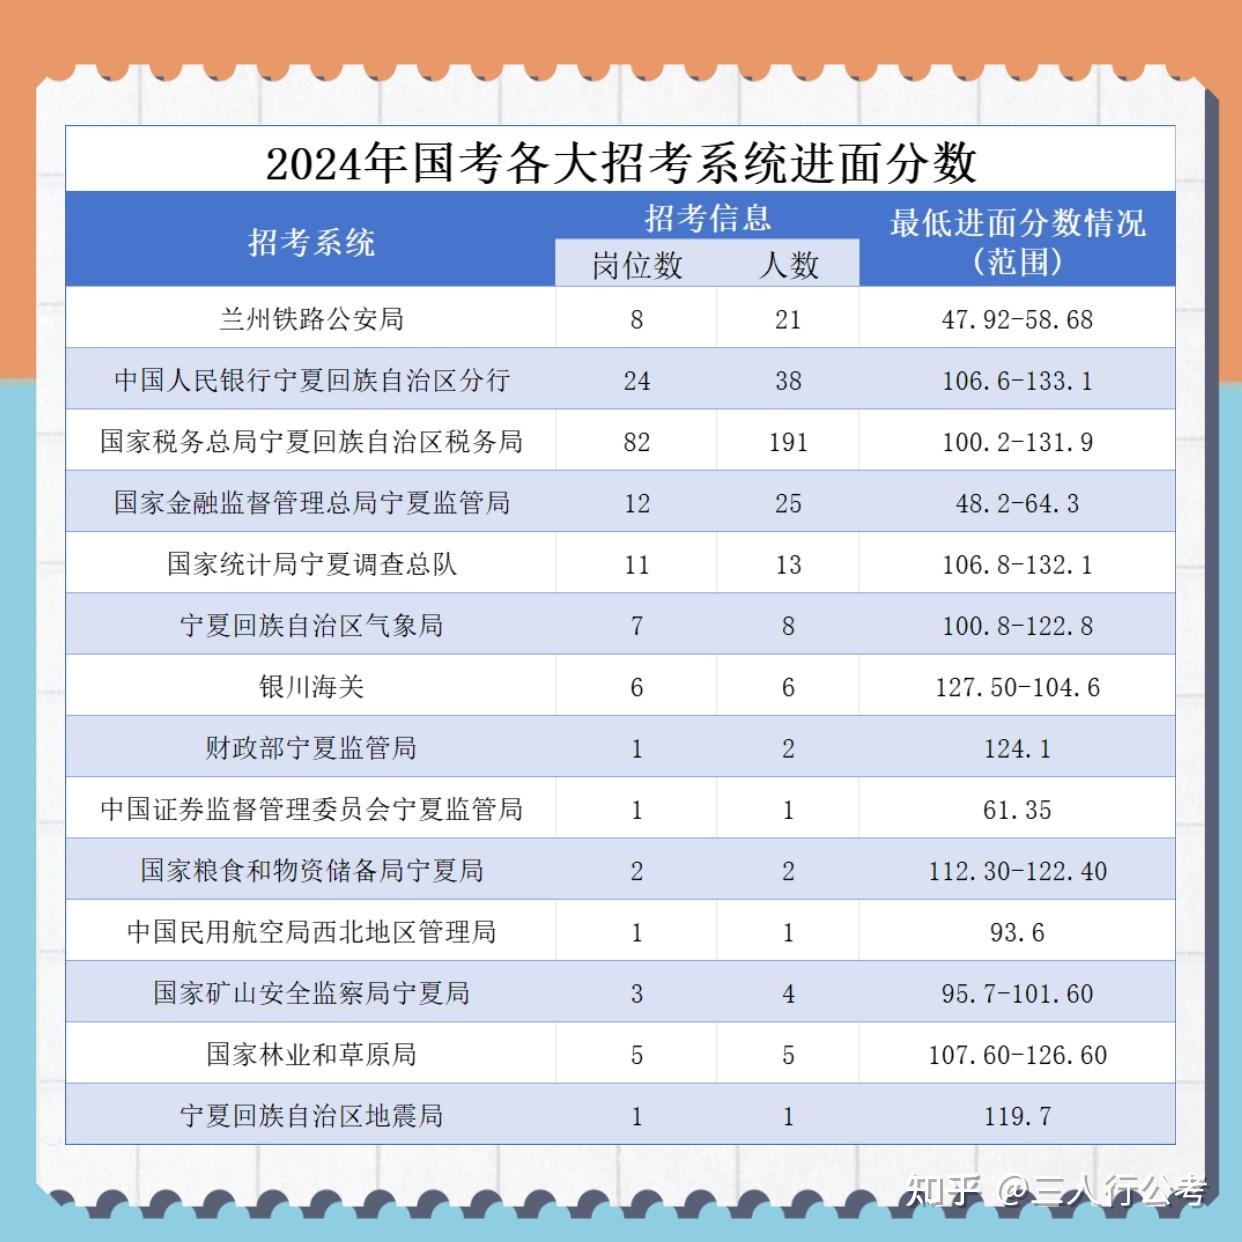 奉节县2022年公开考试录用公务员笔试、面试和总成绩公布表_奉节县人民政府